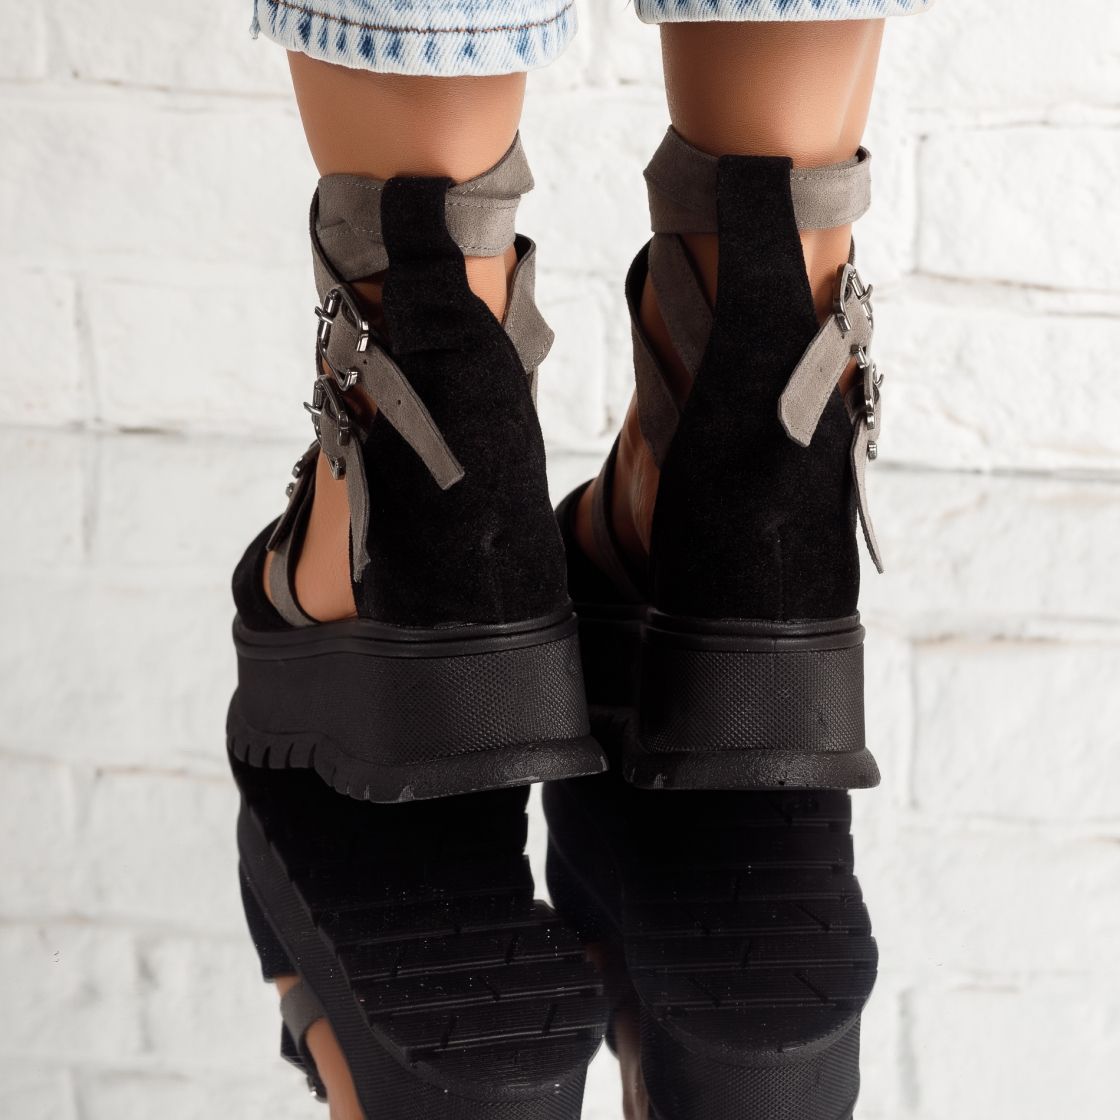 Pantofi Casual Dama Luna Negru/Gri #5076M